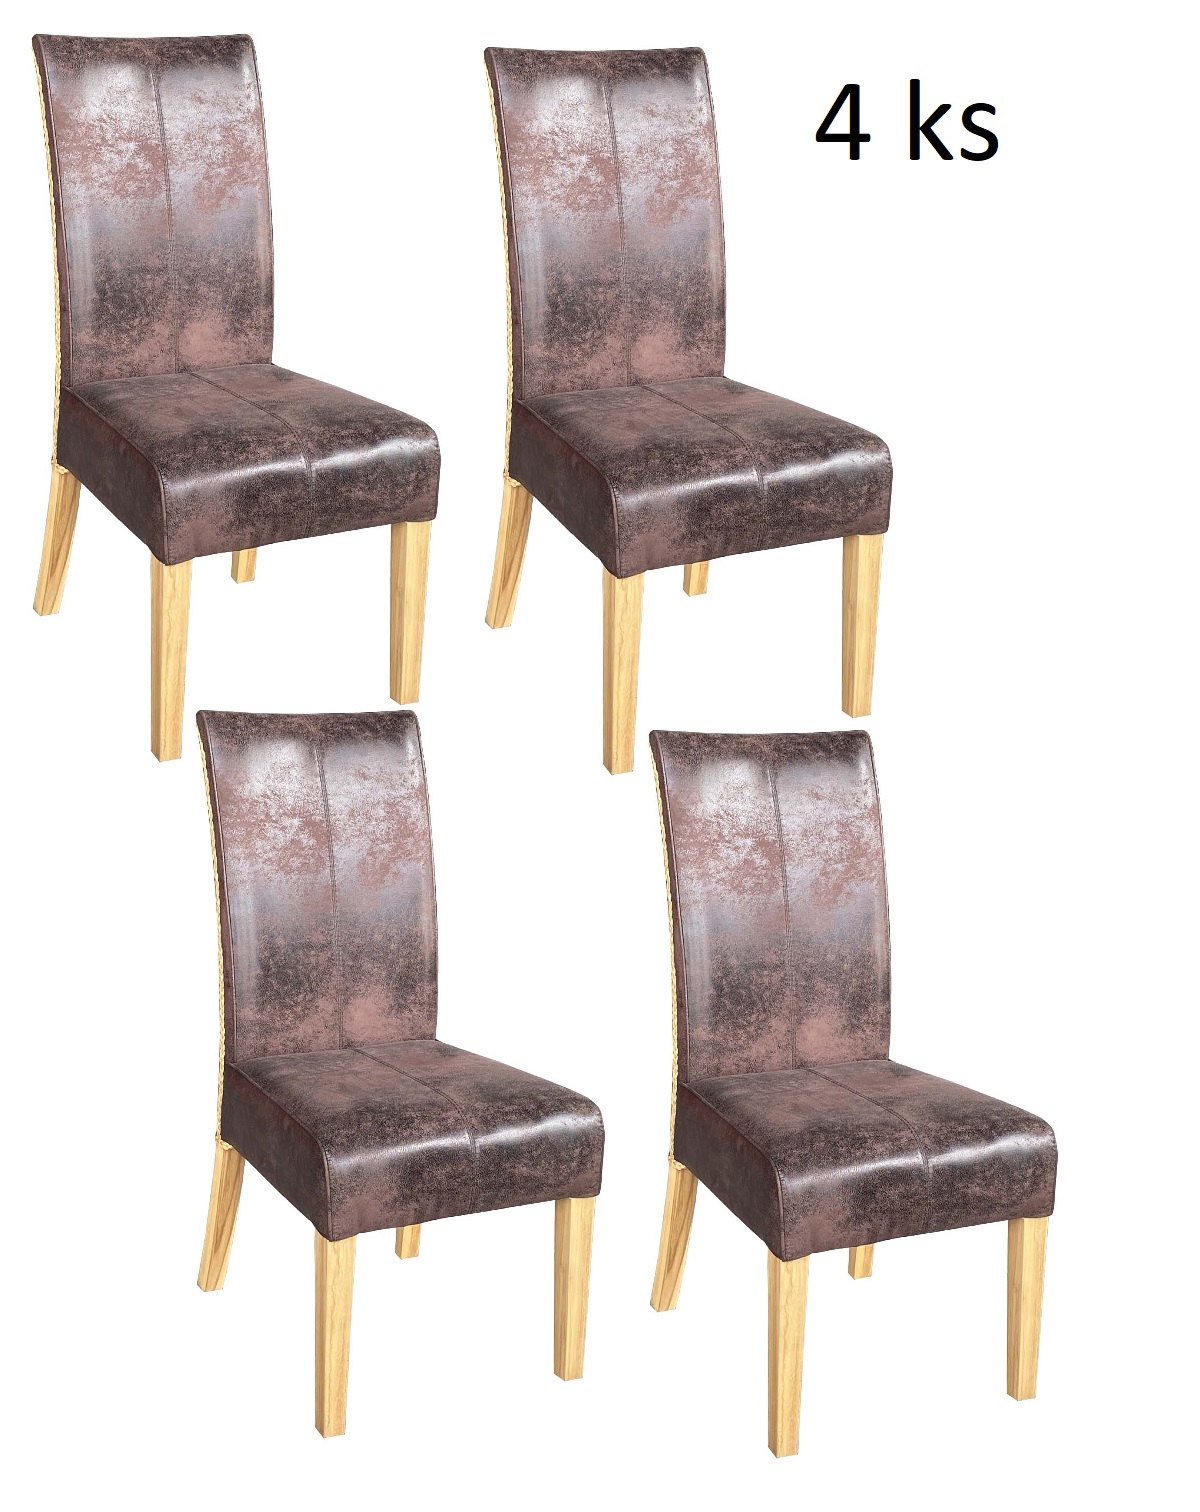 Jídelní židle CHESTER brown - sada 4 kusy - Masiv